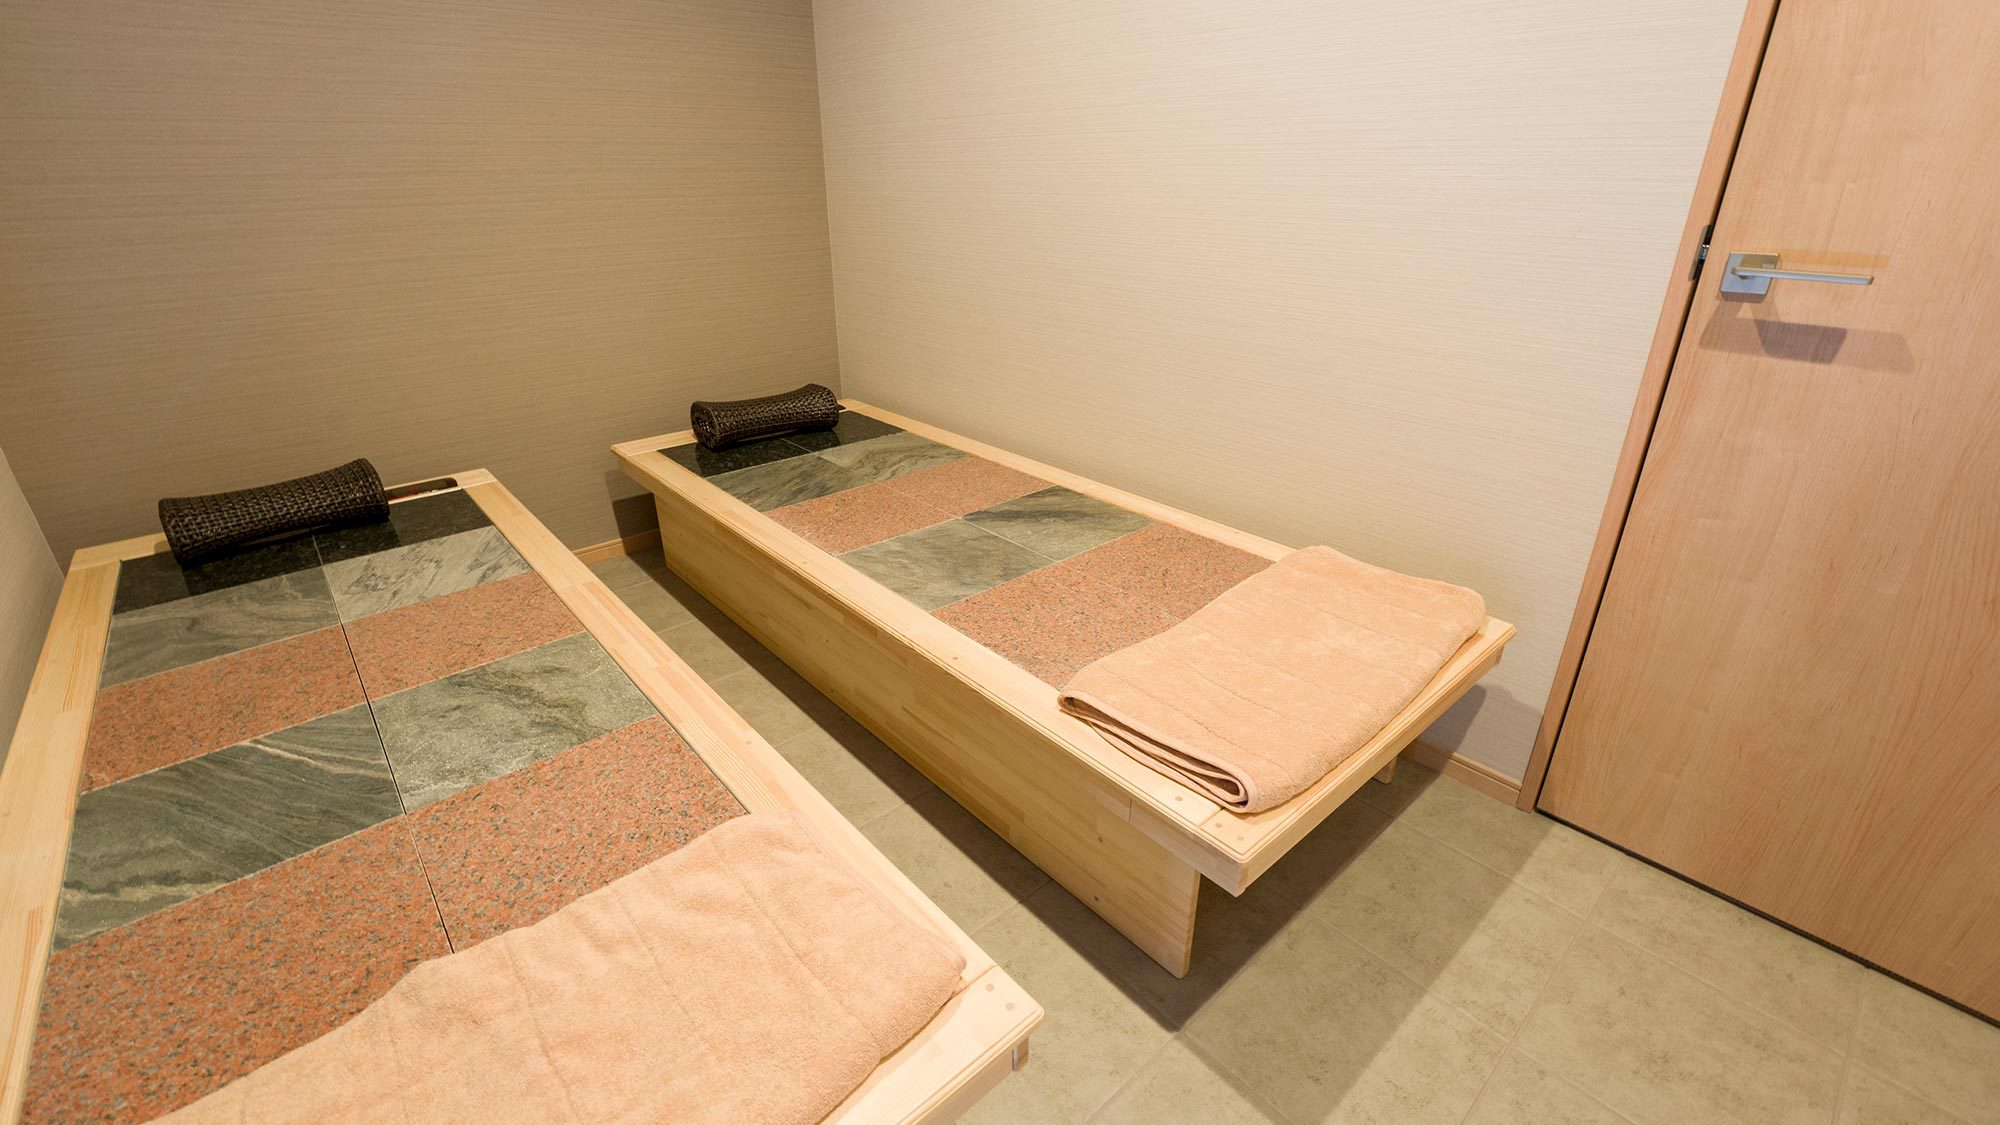 【岩盤浴ベッド】客室専用のドライタイプ岩盤浴ベッド。